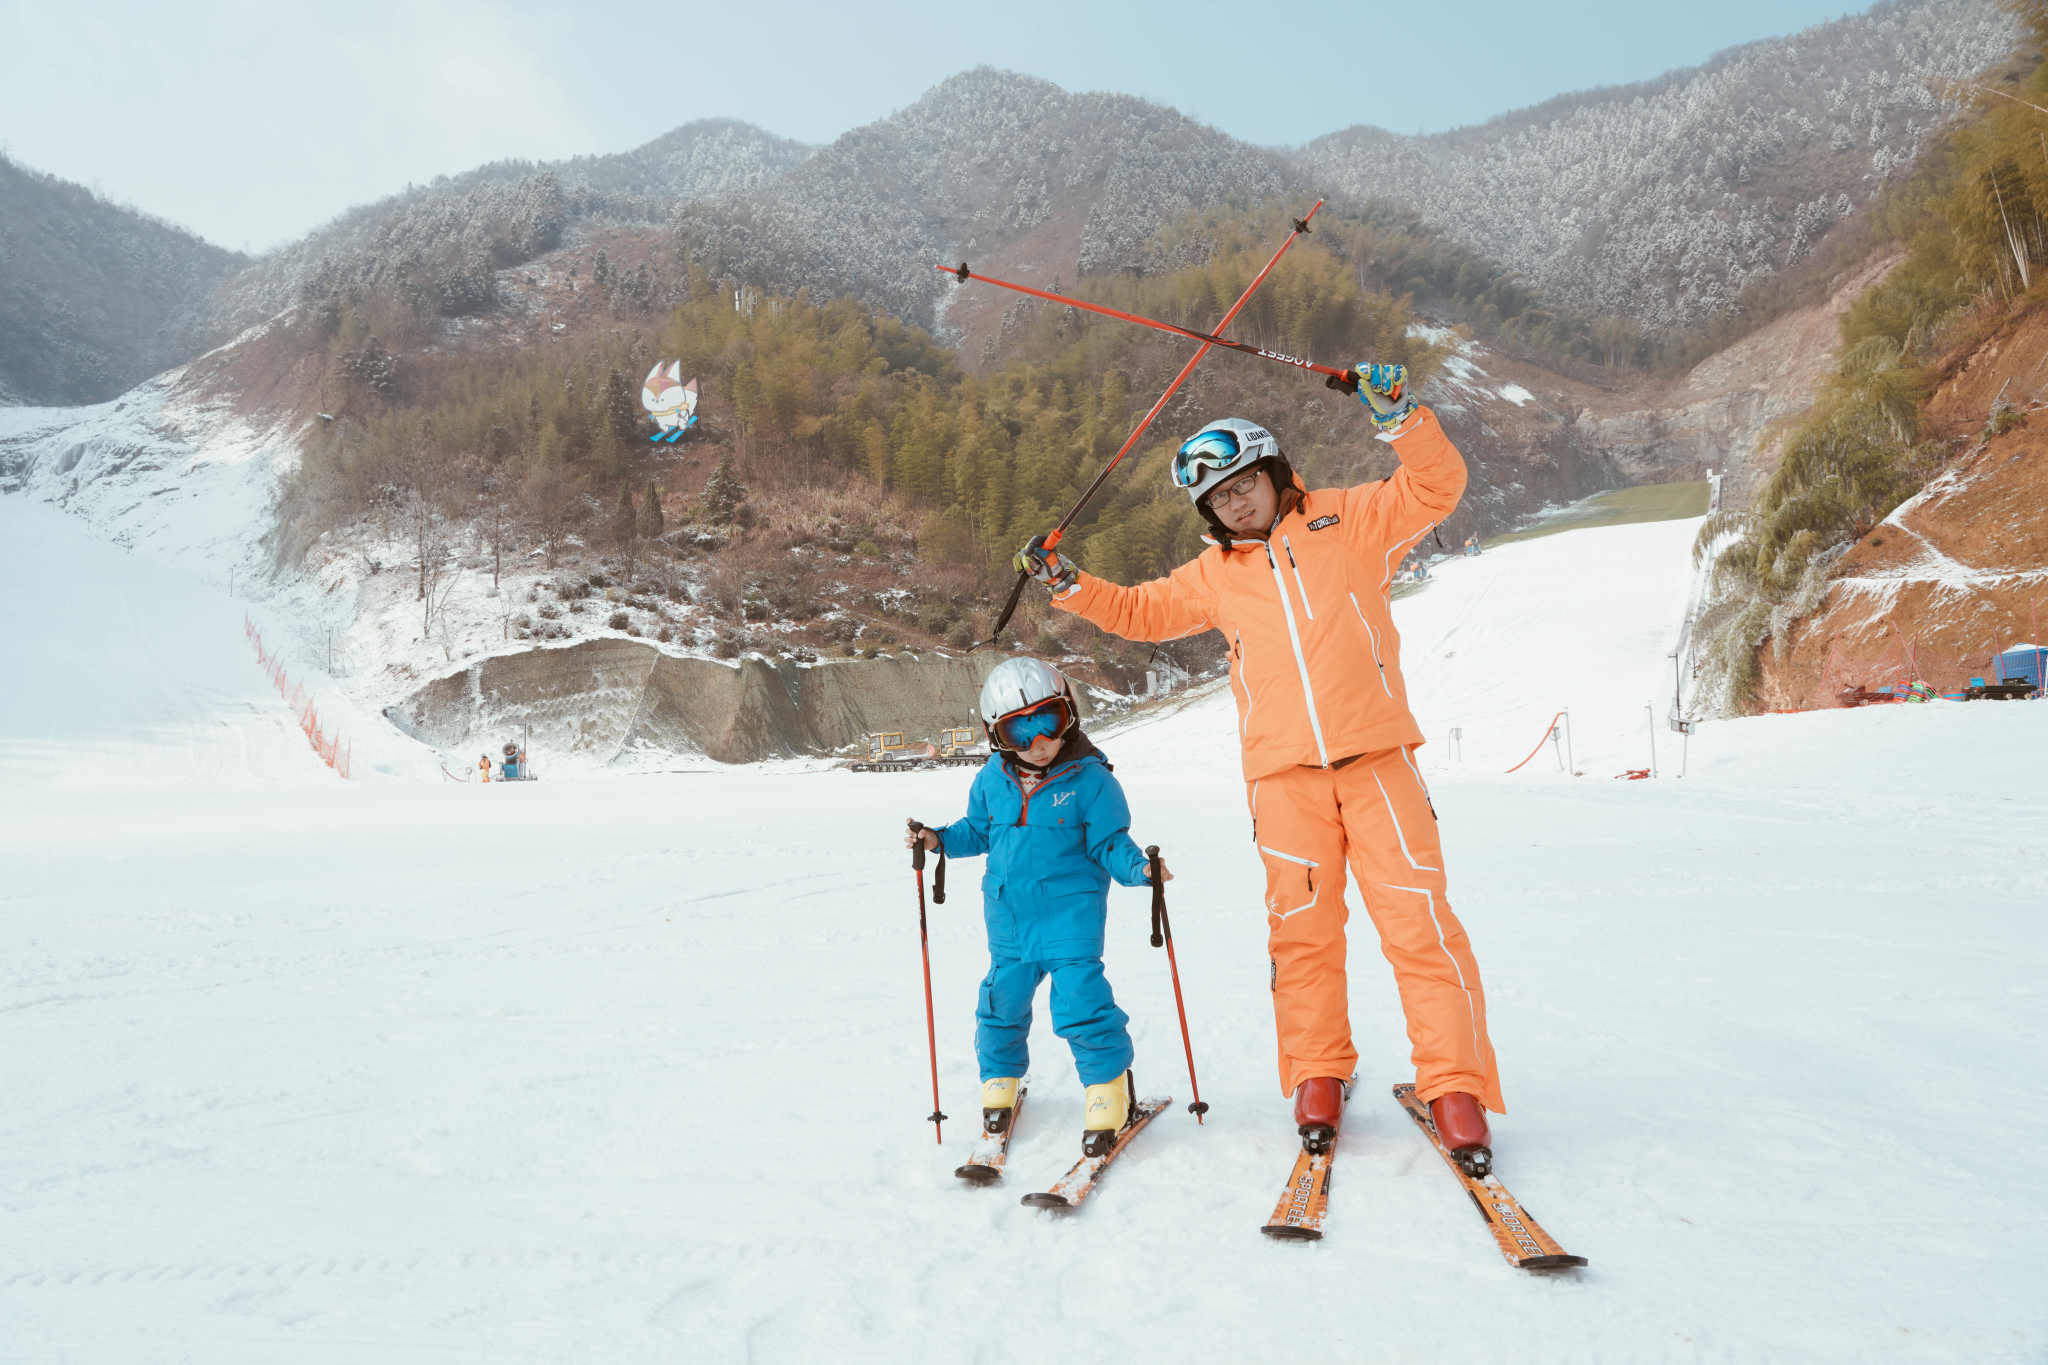 带上孩子一起嗨,这个冬天南方人也能实现滑雪自由啦!